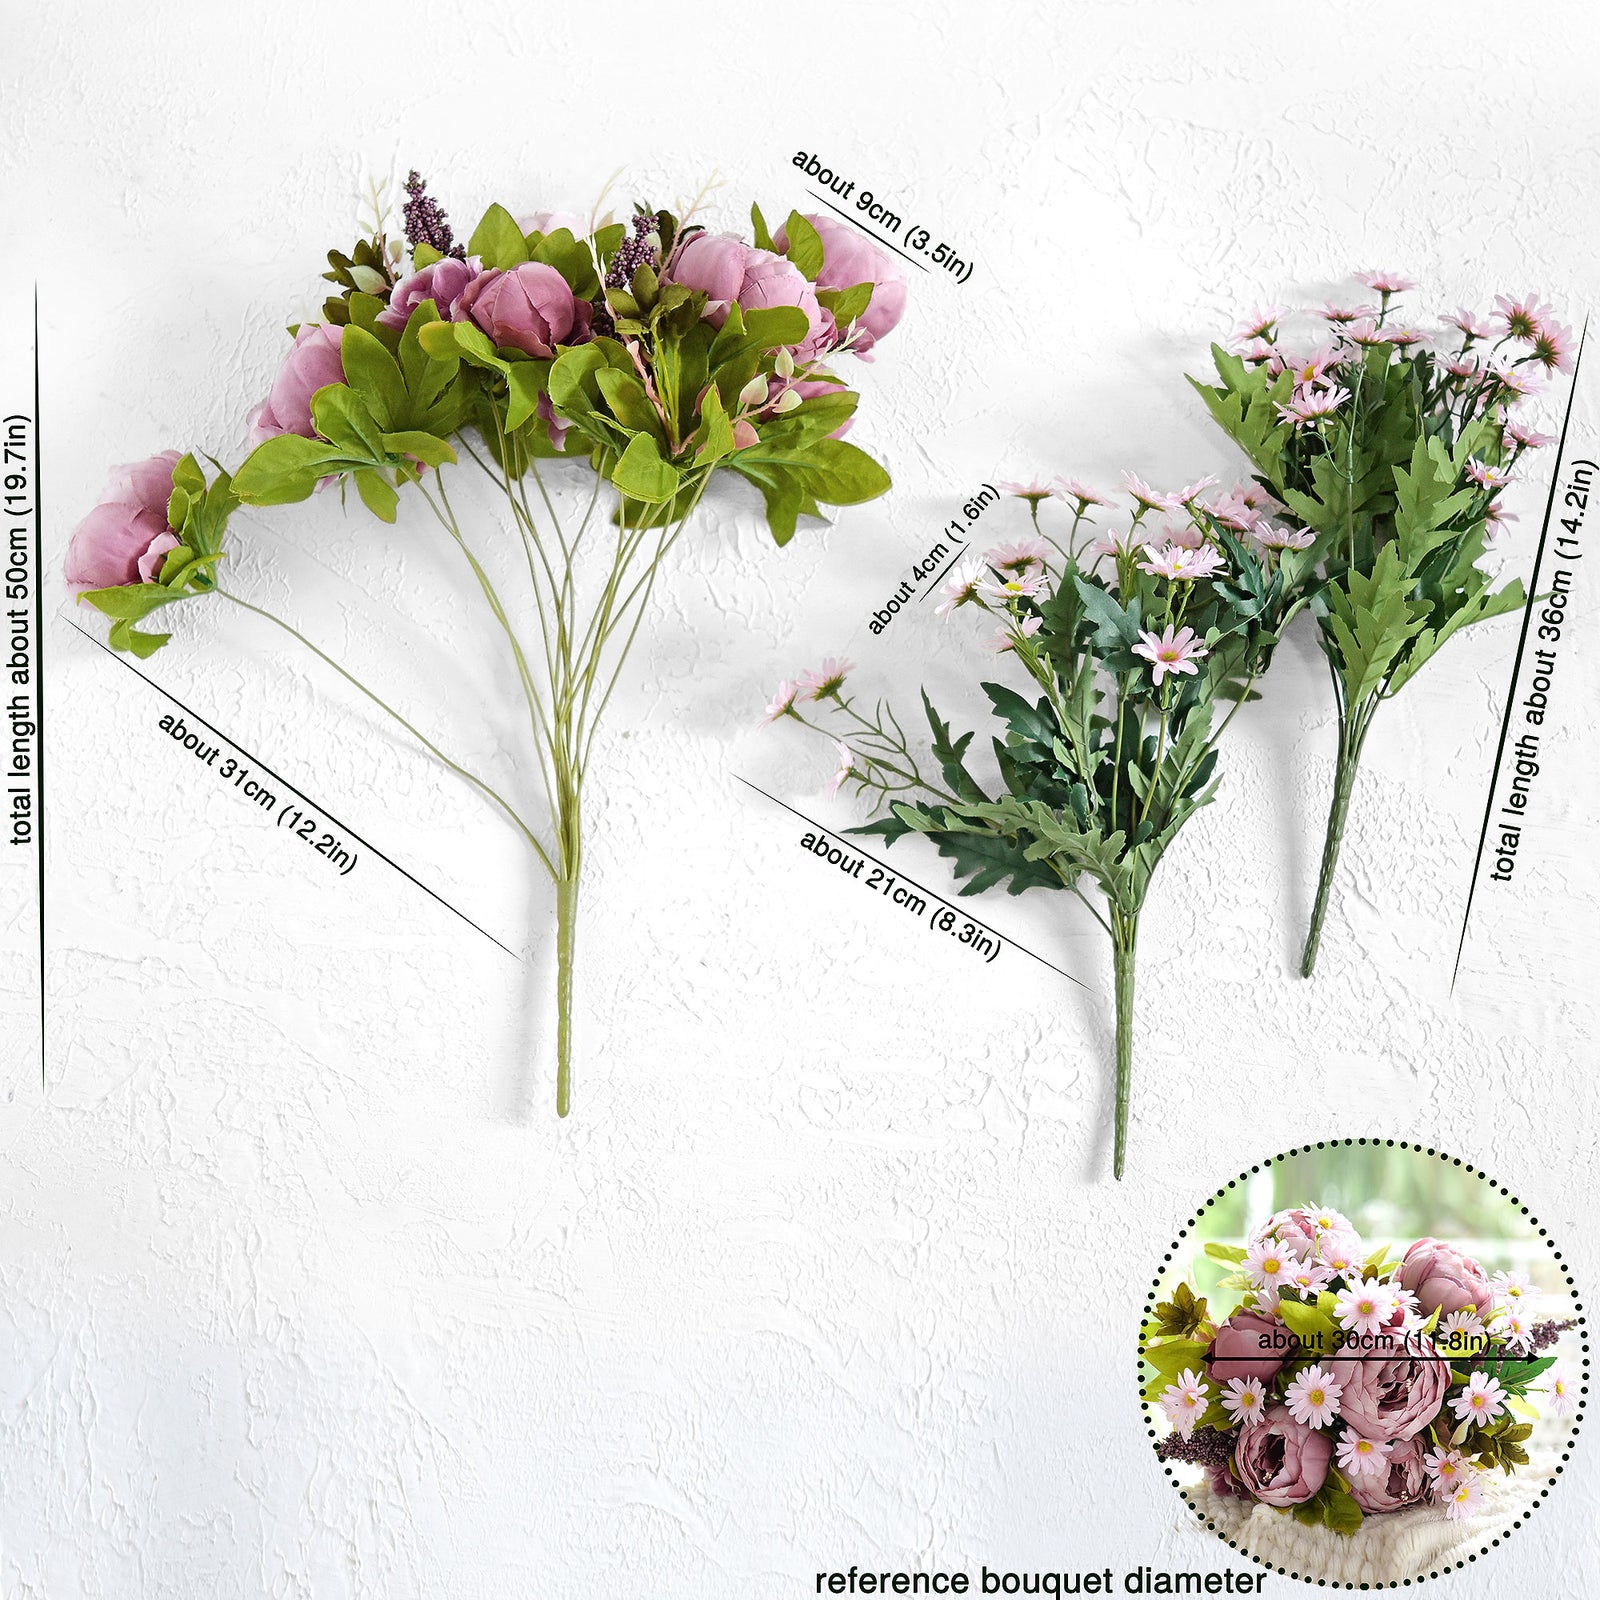 Bohemian Pink Light Mauve Peony and Pink Daisy Mix Flower Bouquet Artificial Flowers Arrangement FiveSeasonStuff Floral